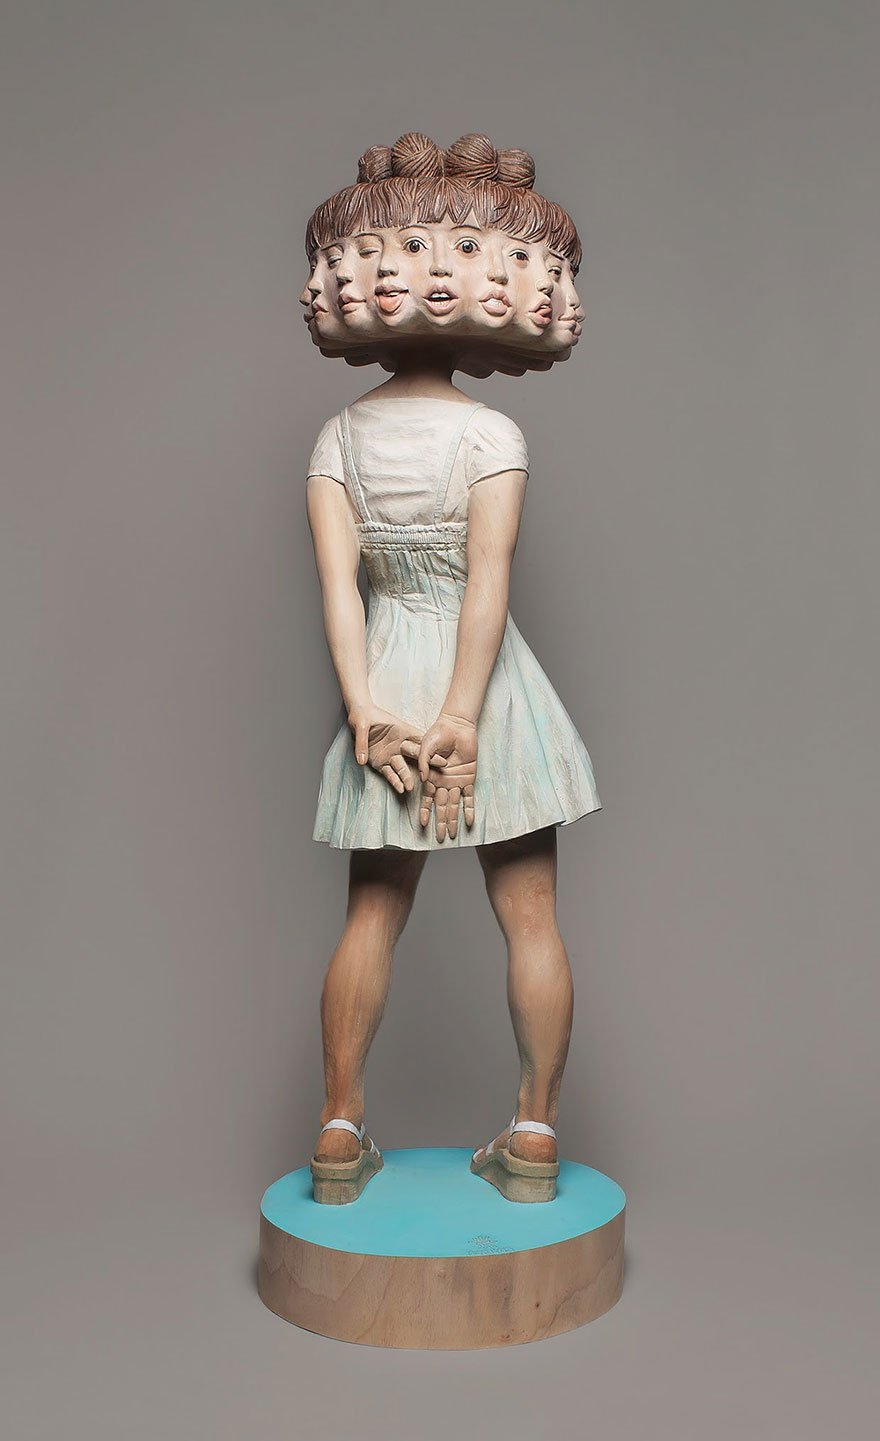 yoshitoshi-kanemaki-12-headed-girl-sculpture